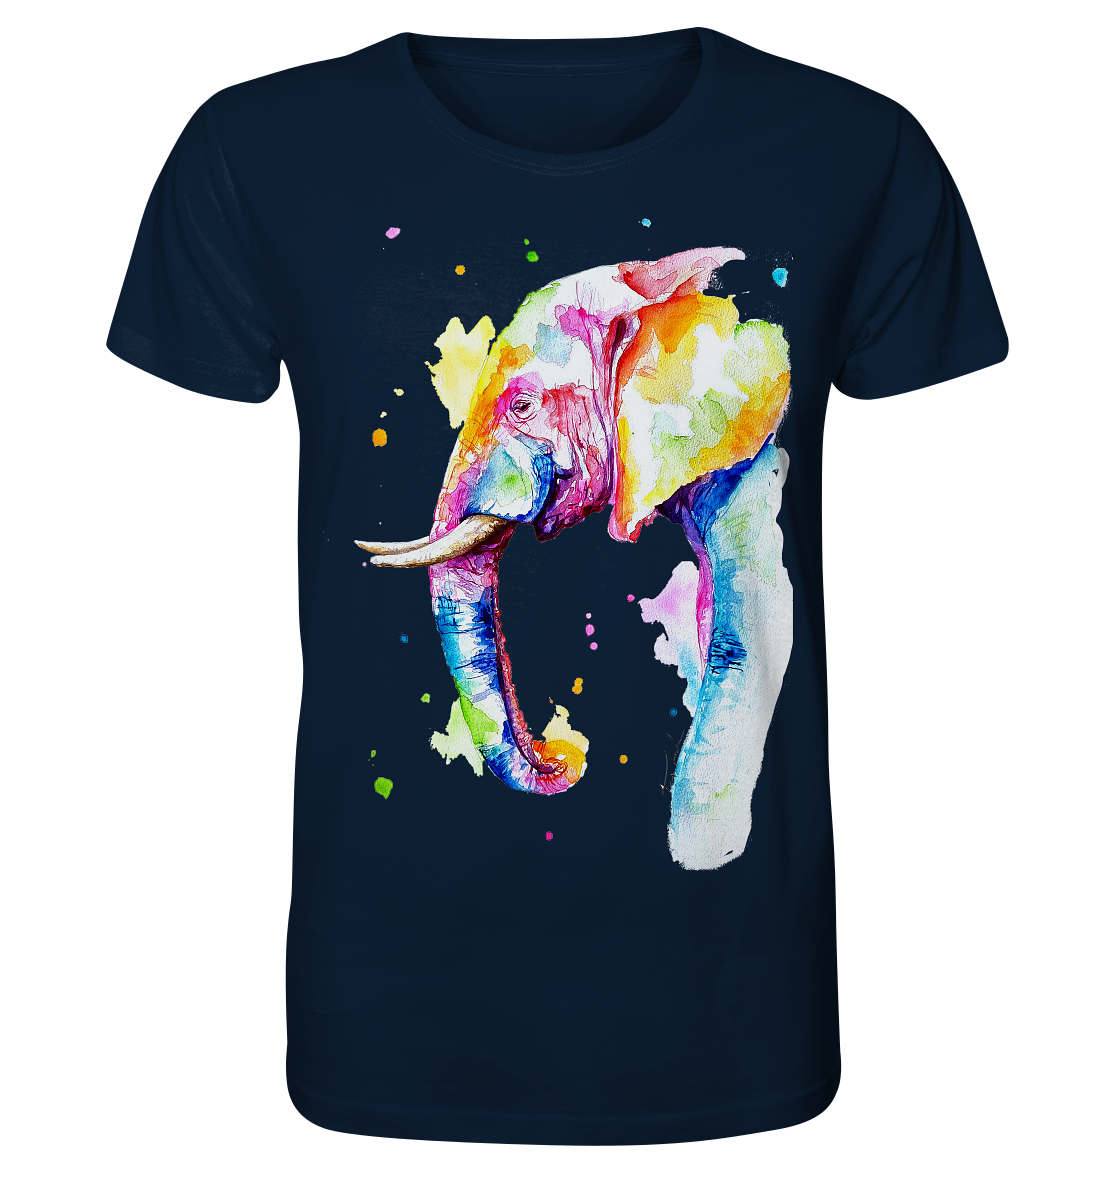 Bunter Elefant - Organic Shirt